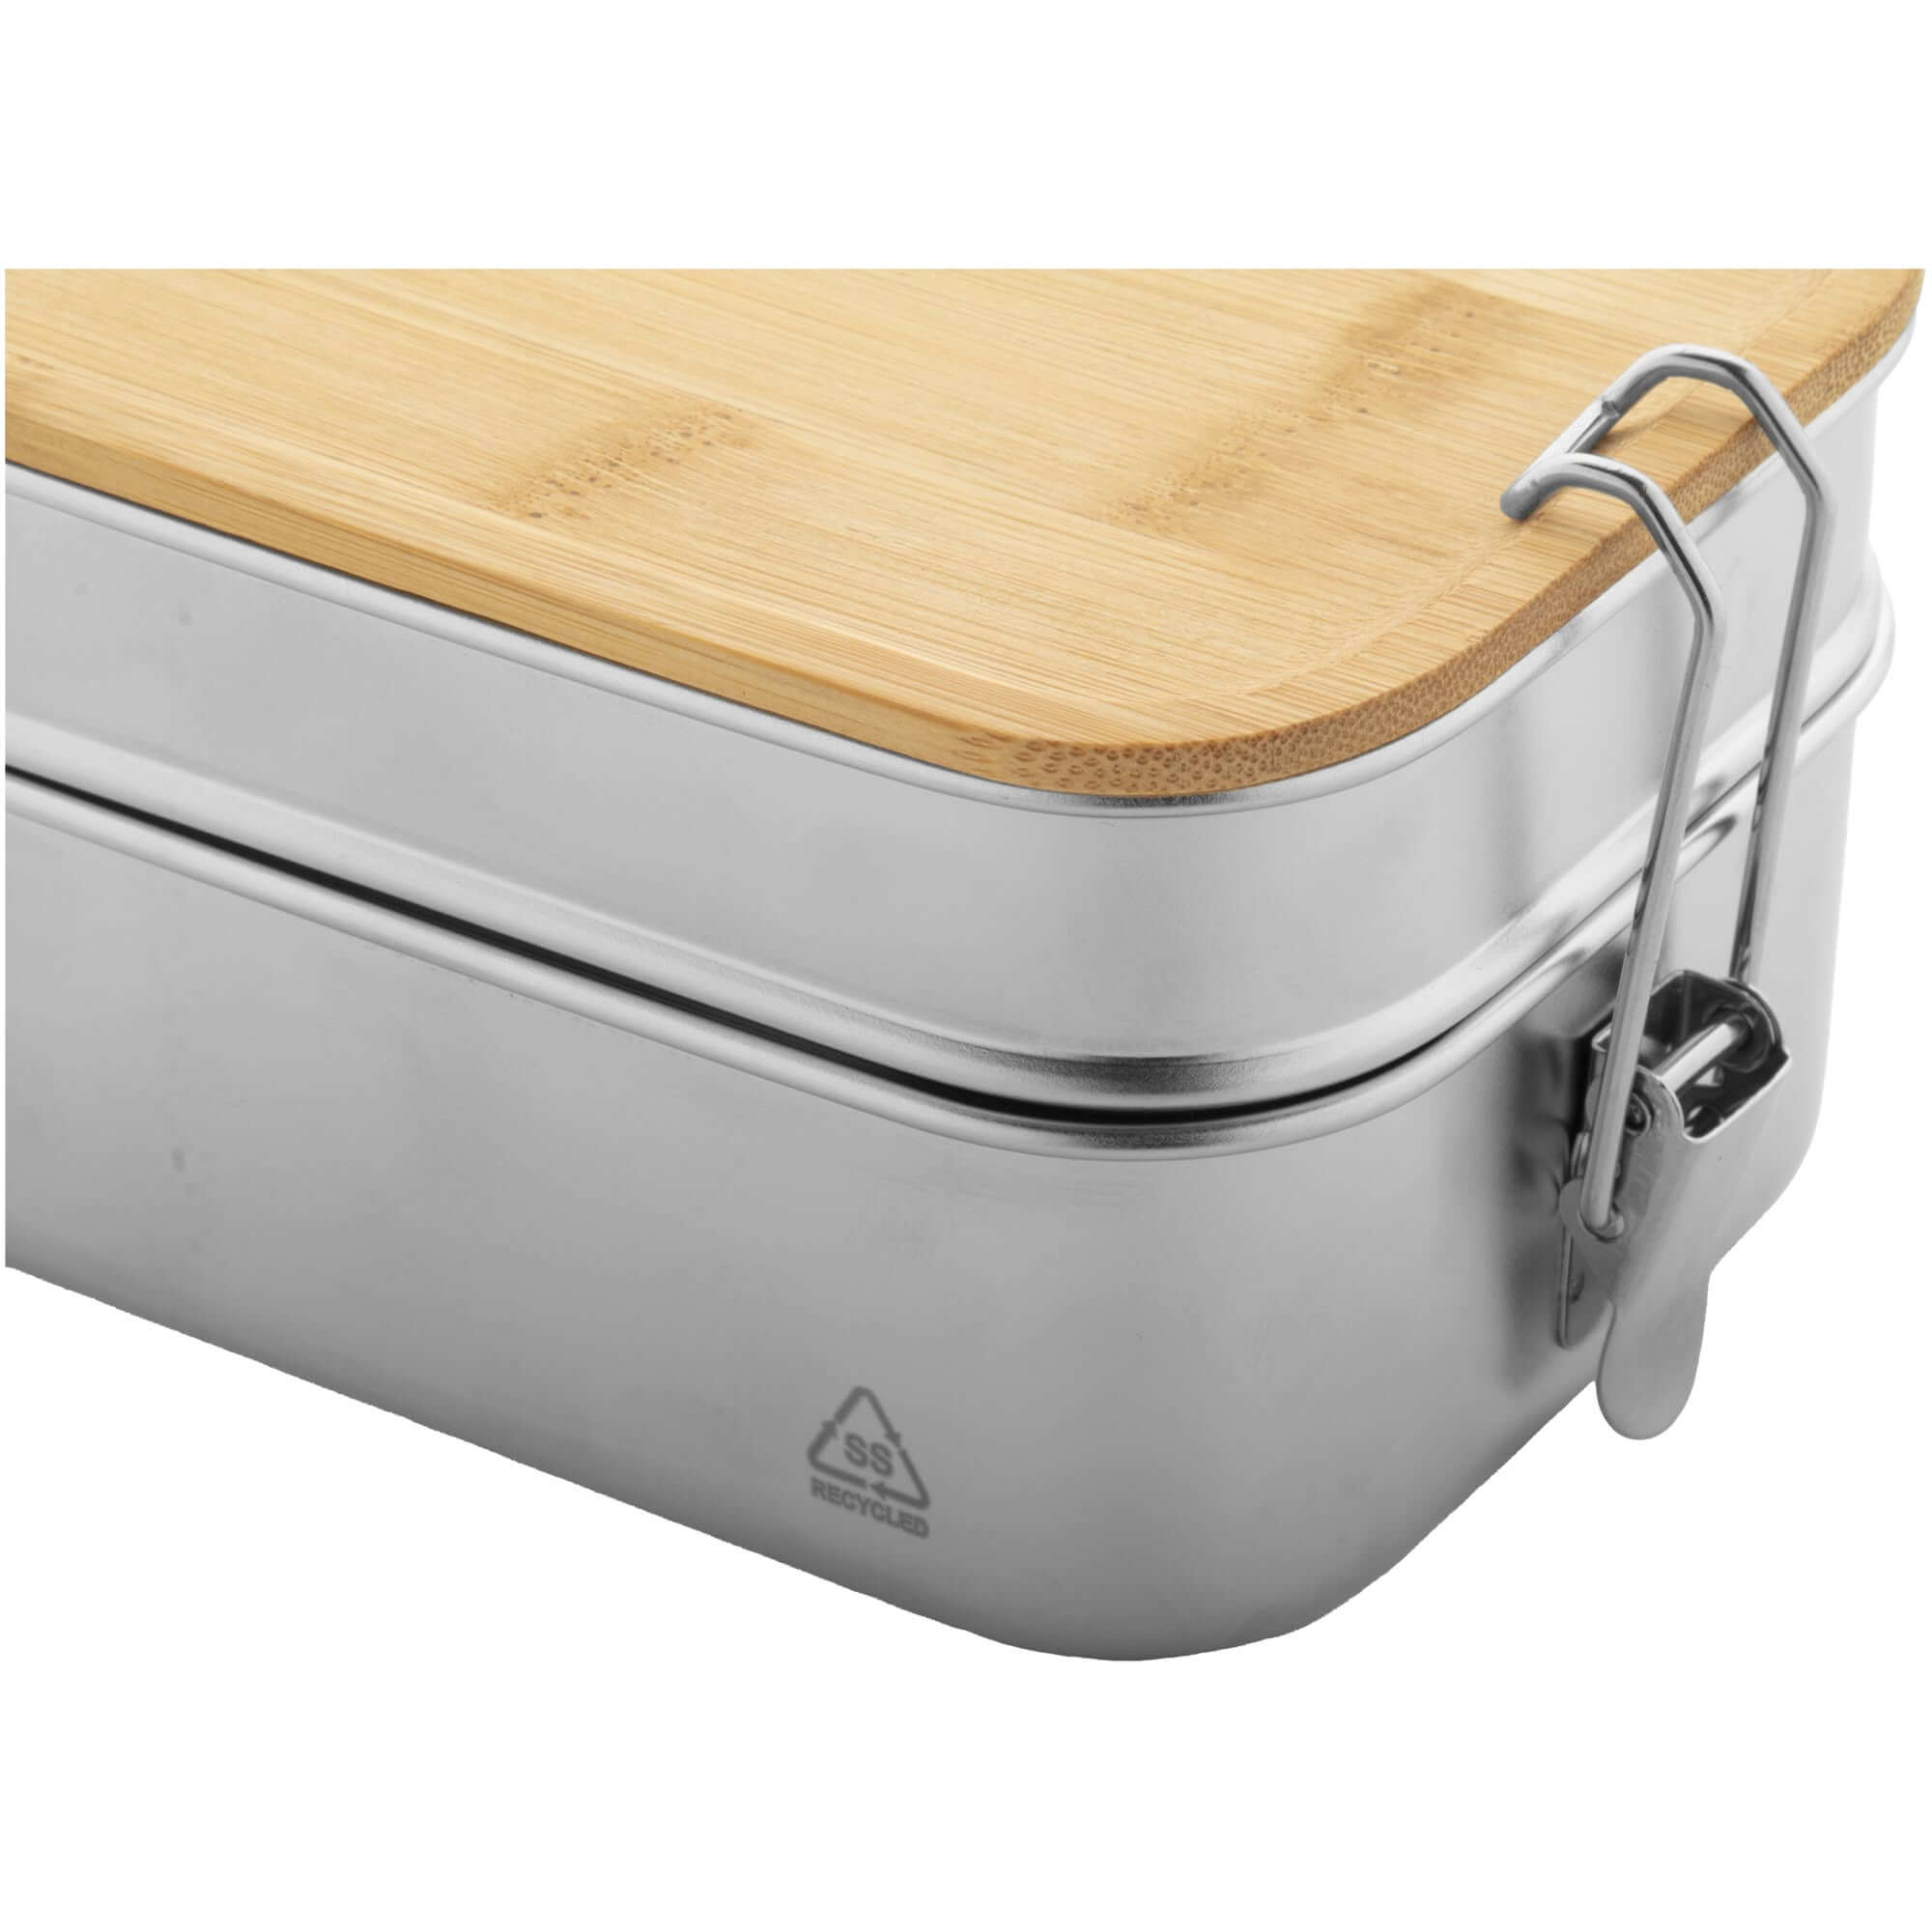 Lunchbox aus recyceltem Edelstahl 170×115×85mm mit Bambusdeckel und Sicherheits-Schnallenverschluss und 2 Behältern von 340 und 600 ml